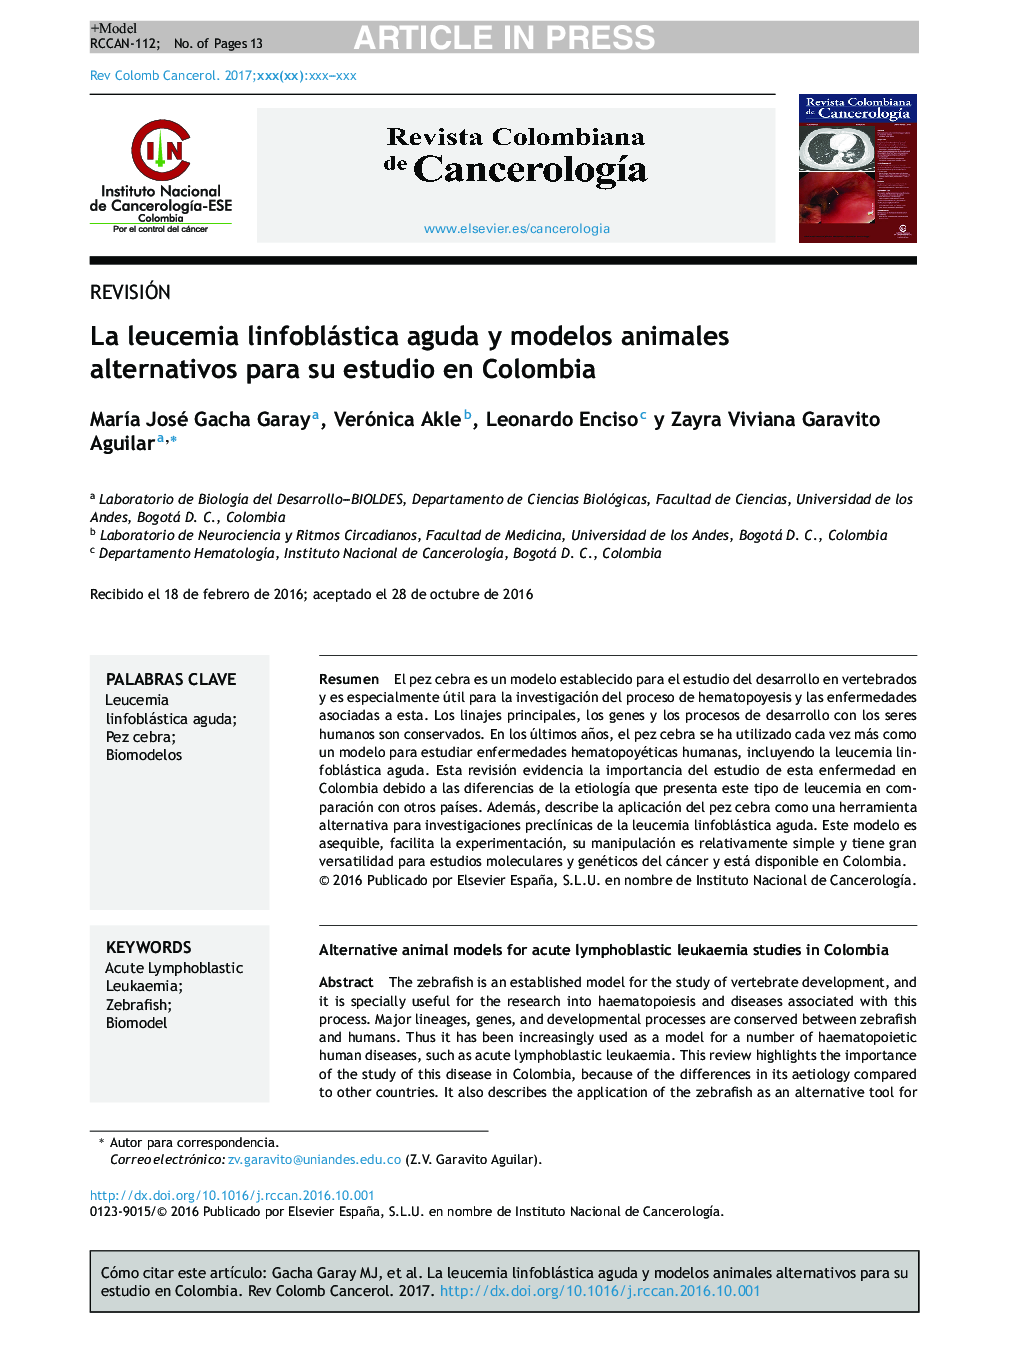 La leucemia linfoblástica aguda y modelos animales alternativos para su estudio en Colombia